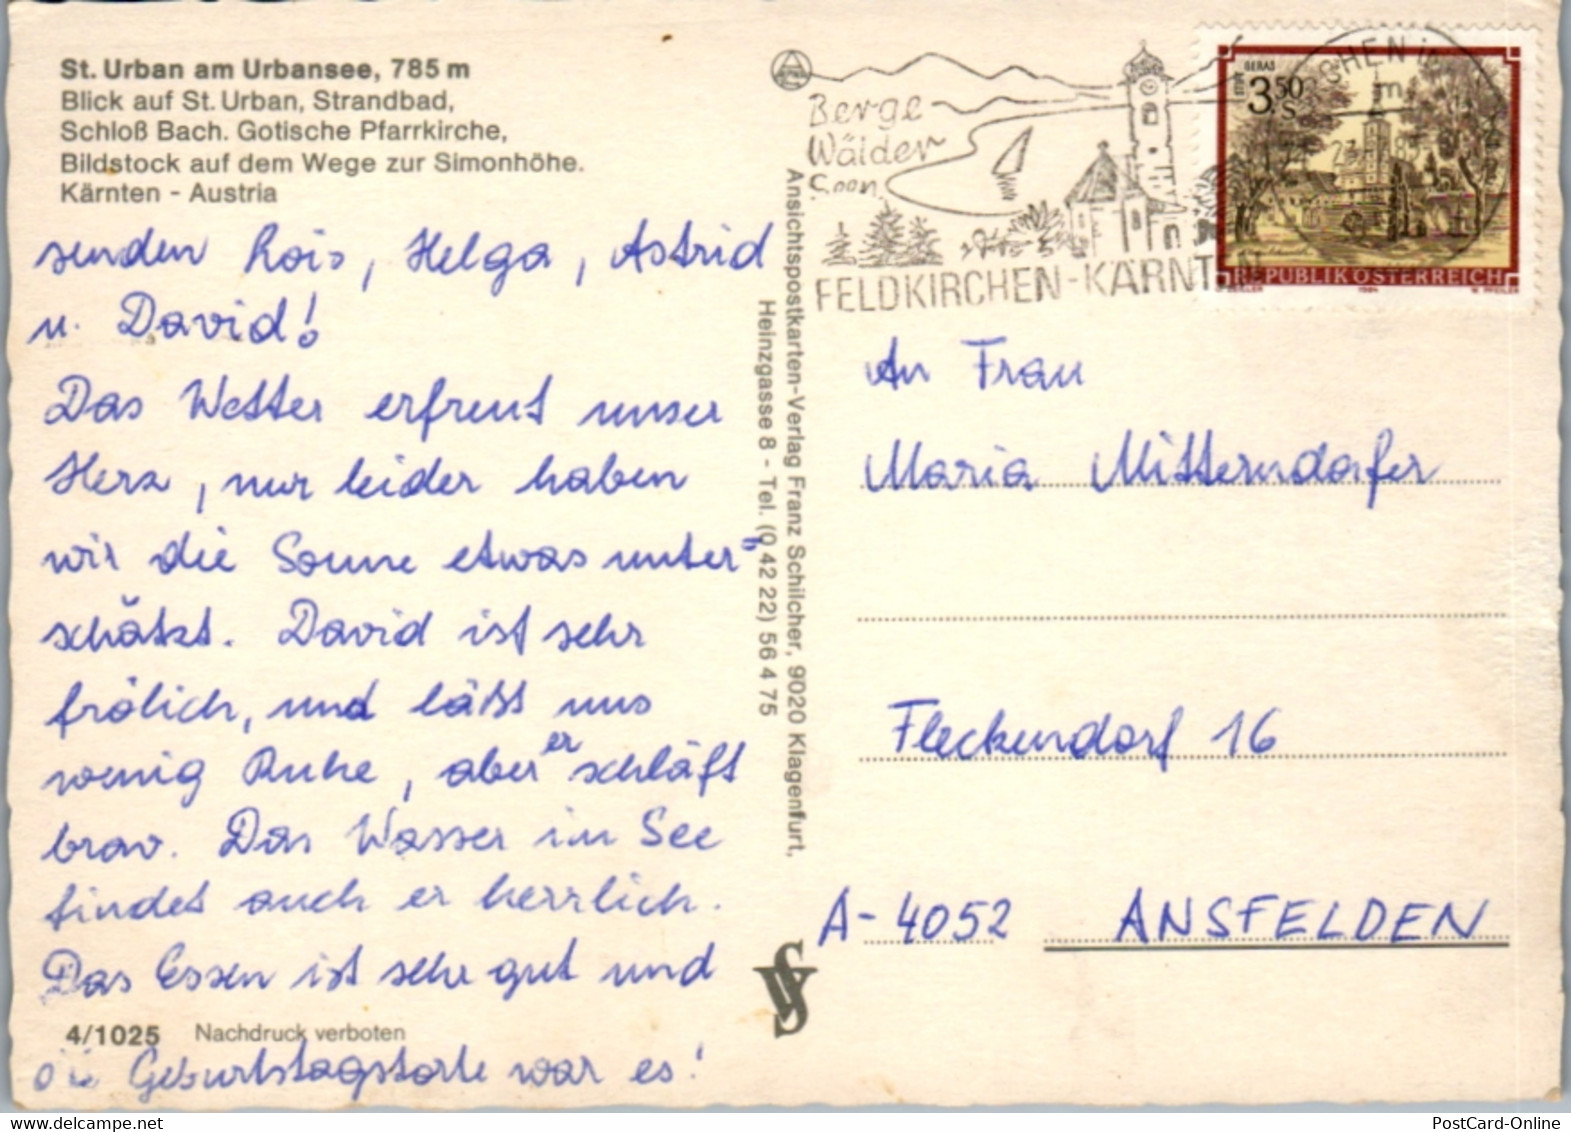 7518 - Kärnten - St. Urban Am Urbansee , Strandbad , Schloß Bach. Gotische Kirche , Bildstock Simonhöhe - Gelaufen 1985 - Feldkirchen In Kärnten